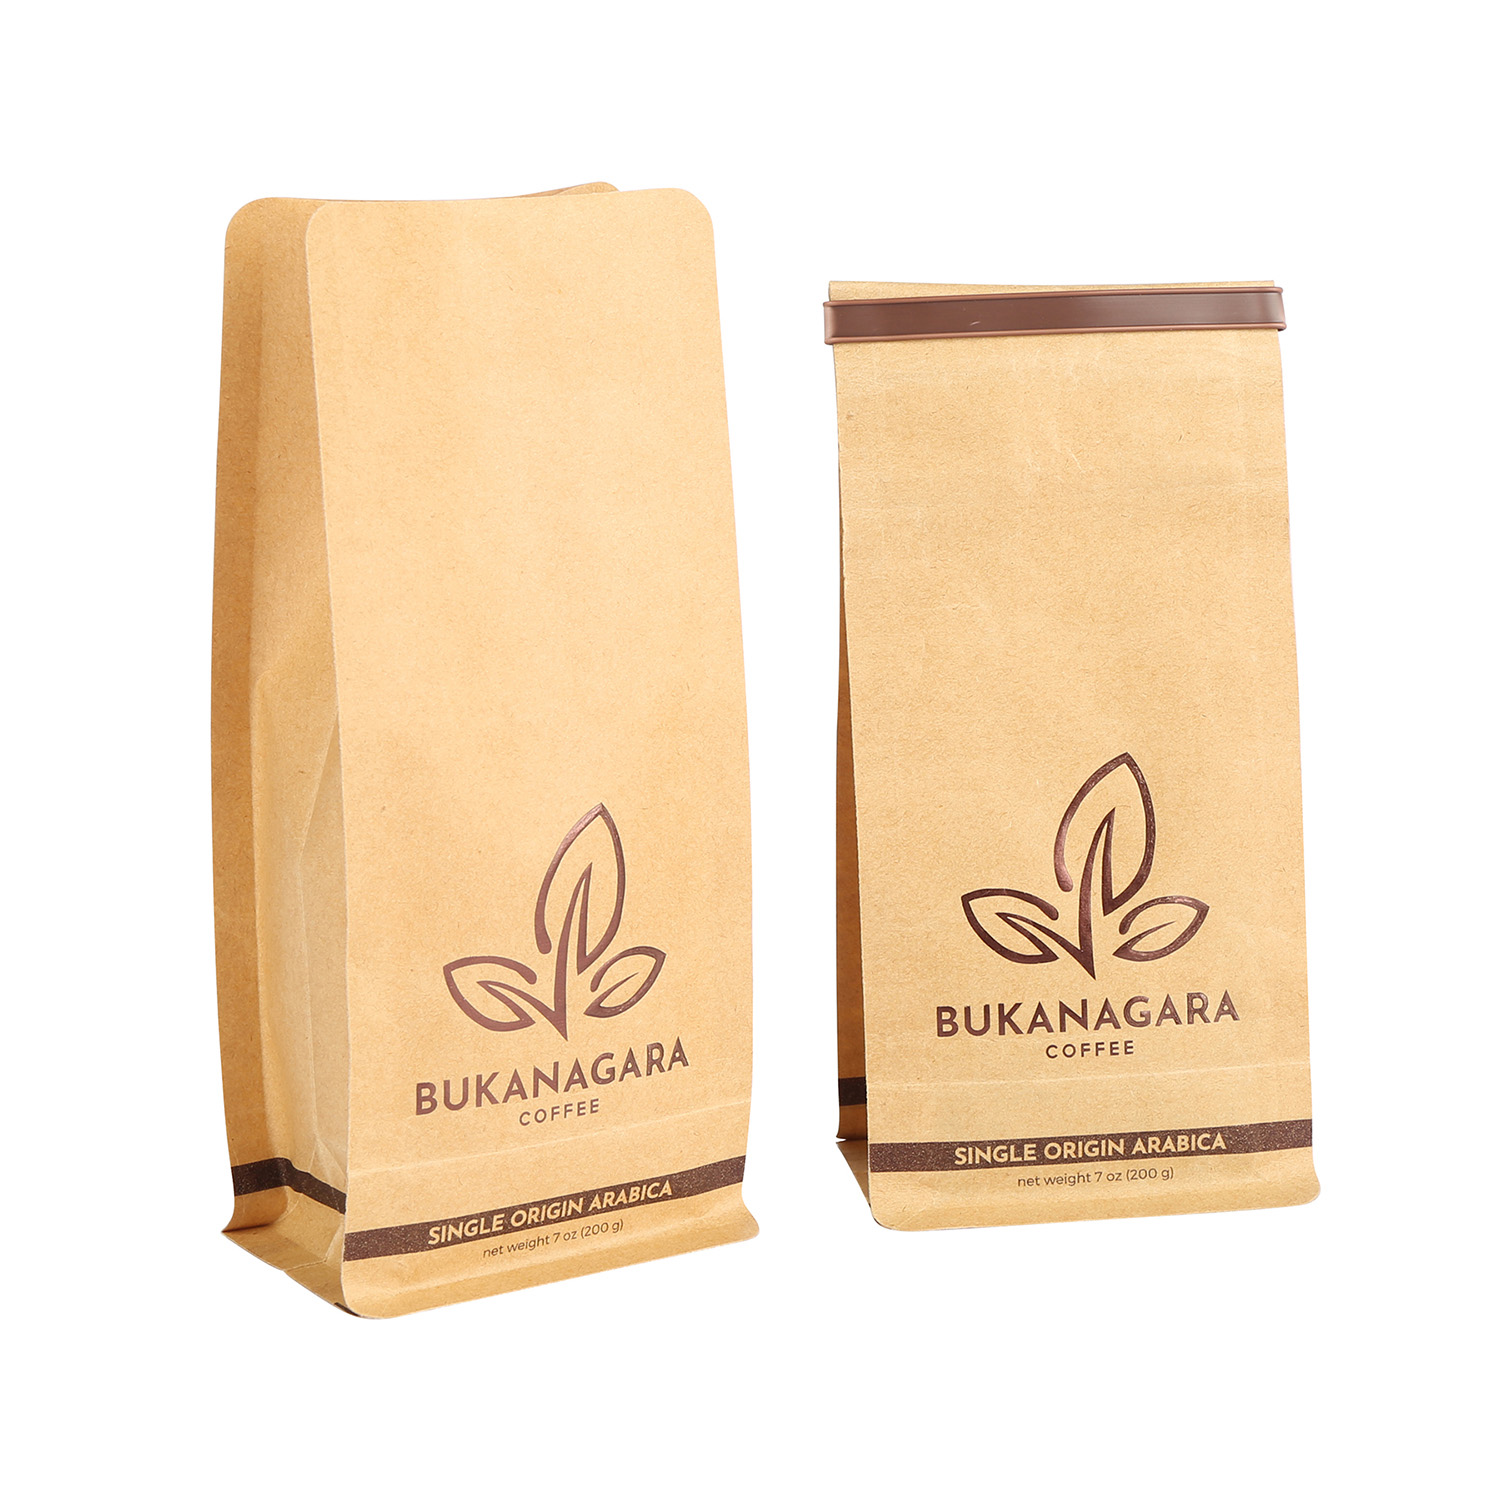 Compostable Biodégradable Box Box Box Pouch Café Bag